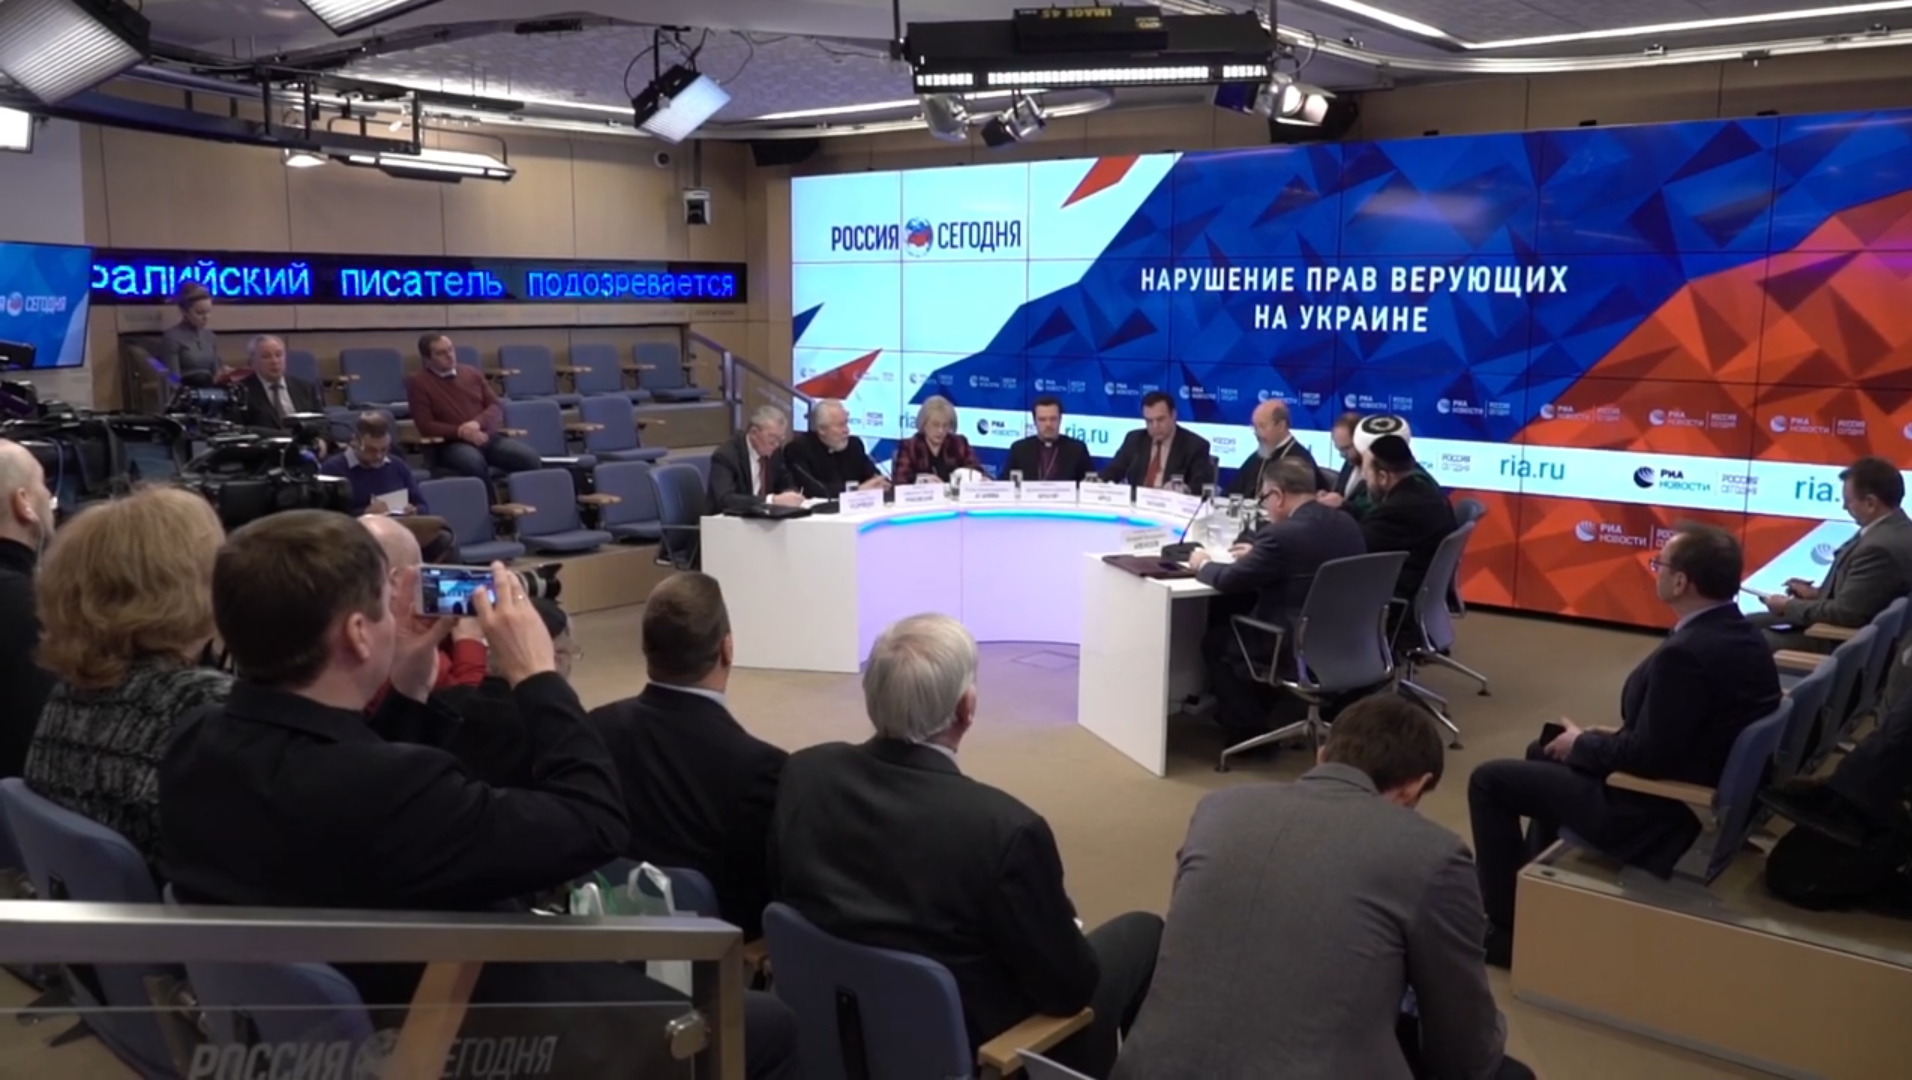 Круглый стол «Нарушение прав верующих на Украине» в МИА Россия Сегодня